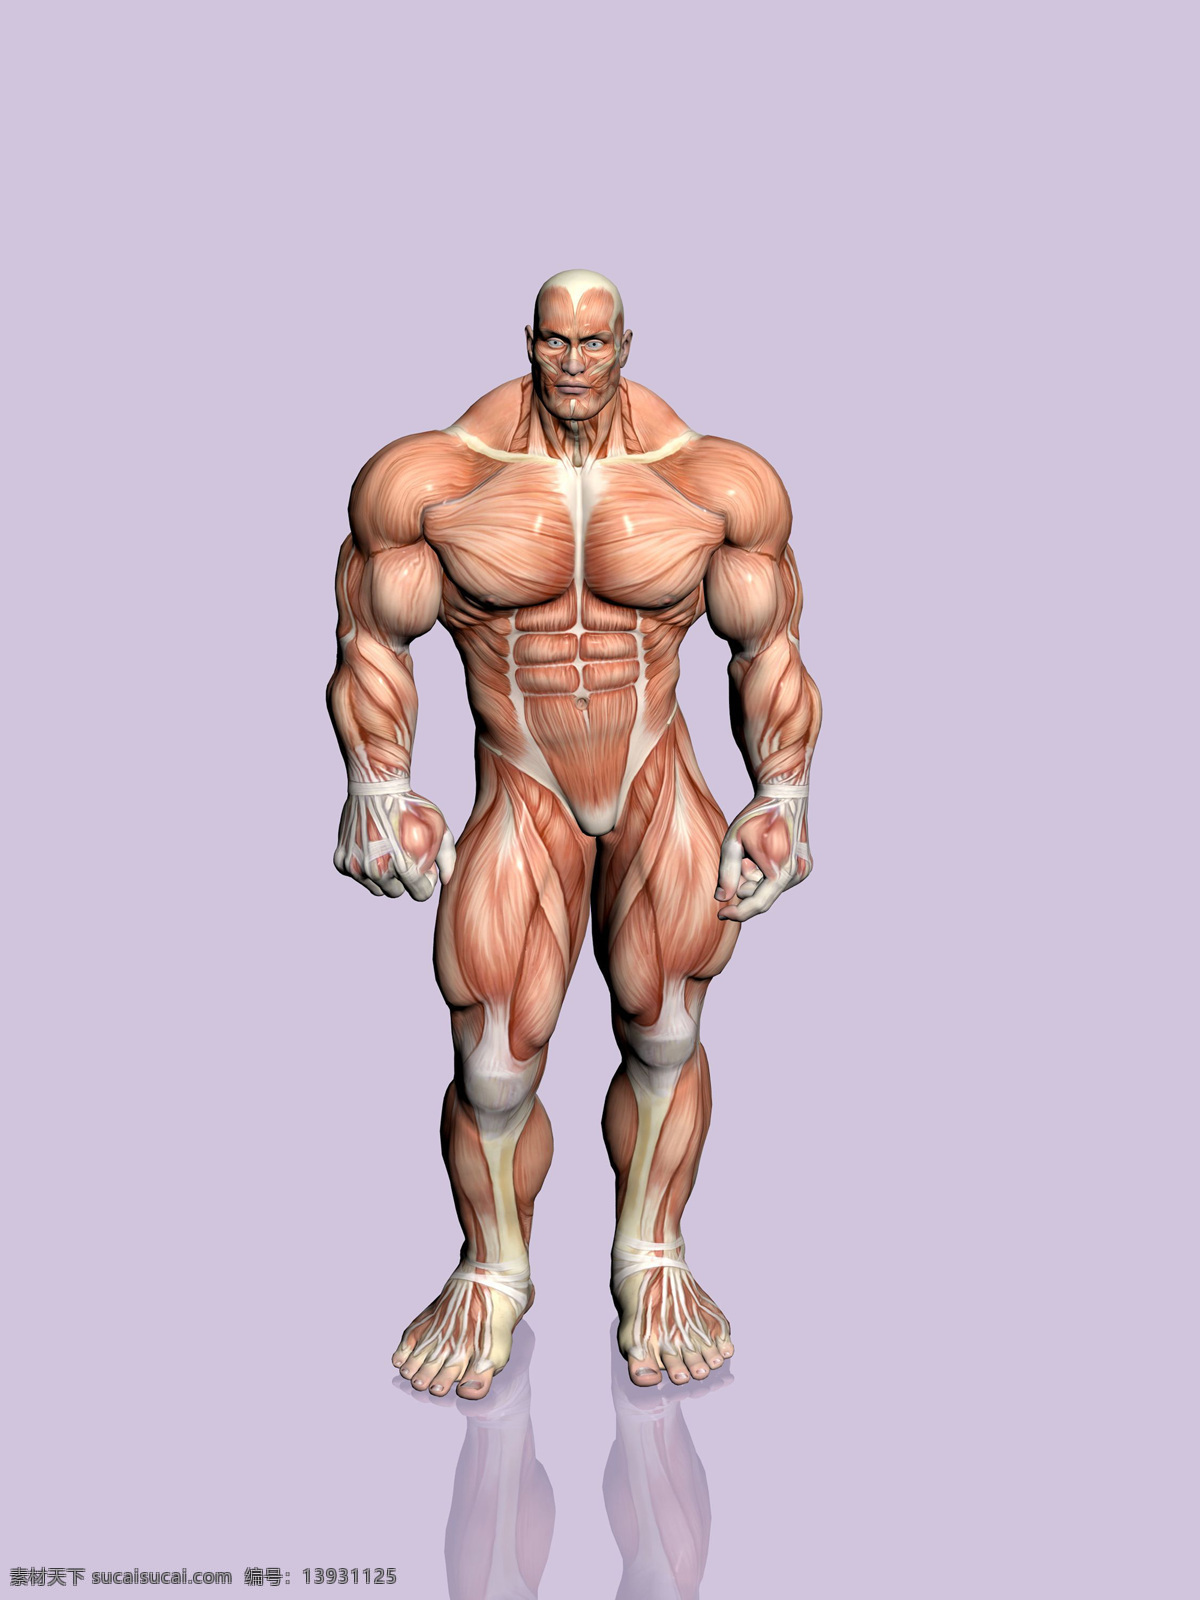 肌肉大力士 肌肉男 胸肌 人体结构 强壮 解剖图 人体肌肉 人物图库